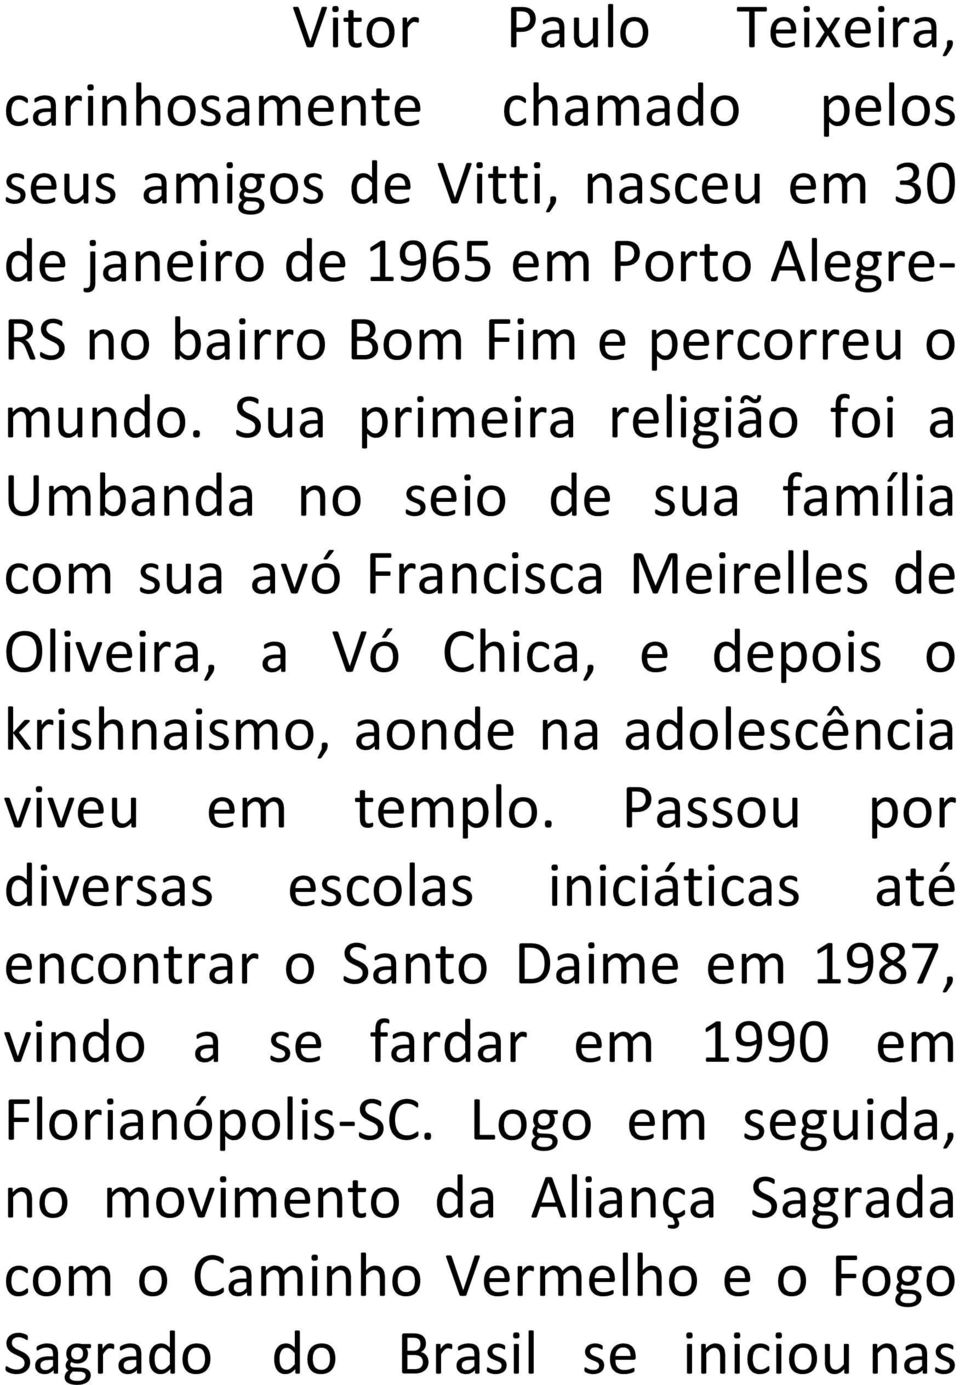 Sua primeira religião foi a Umbanda no seio de sua família com sua avó Francisca Meirelles de Oliveira, a Vó Chica, e depois o krishnaismo,